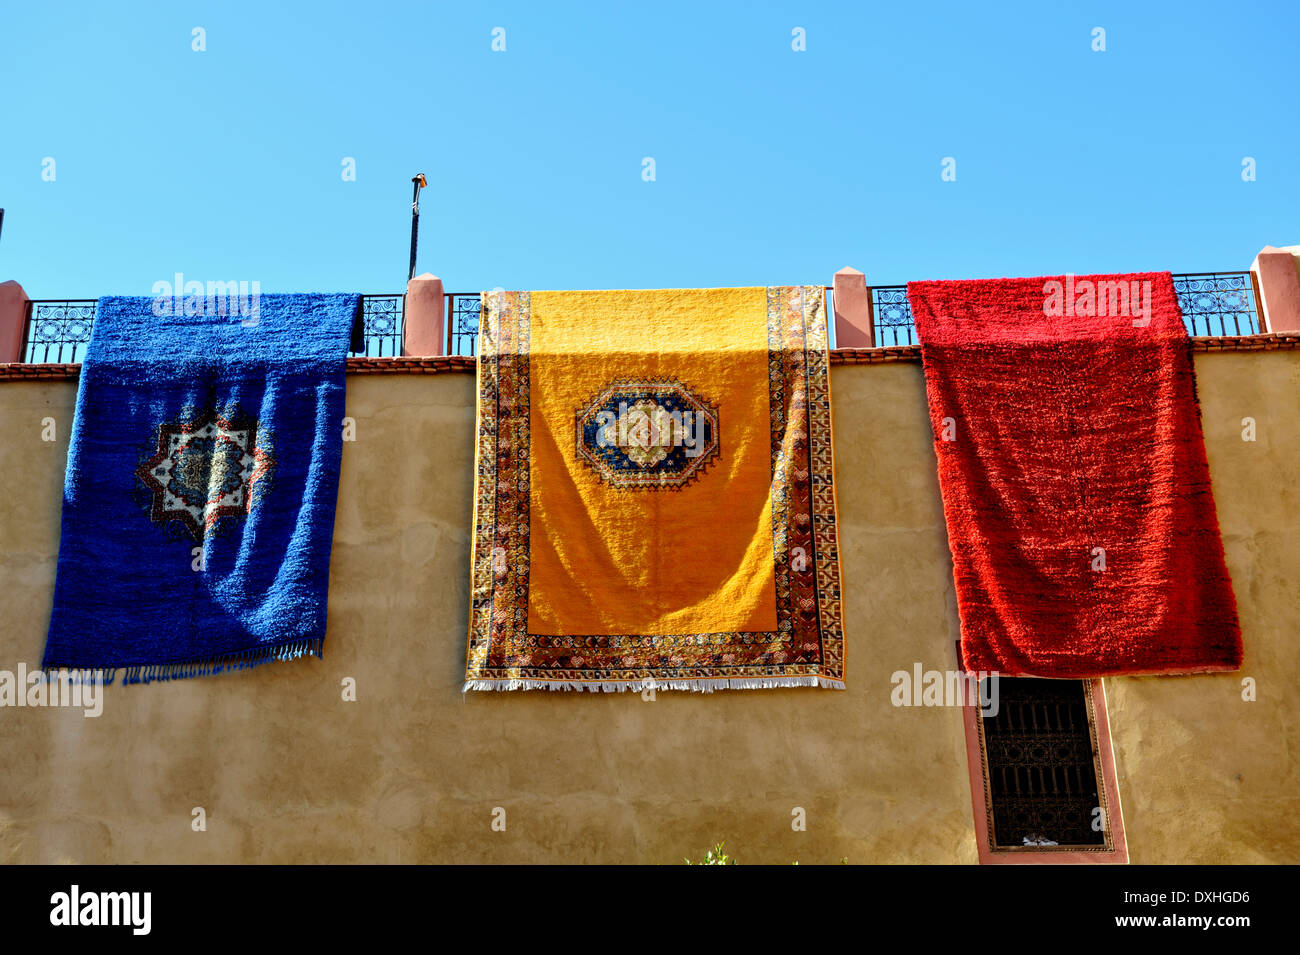 Rojo, amarillo y azul alfombras colgando en la pared, Marrakech, Marruecos Foto de stock